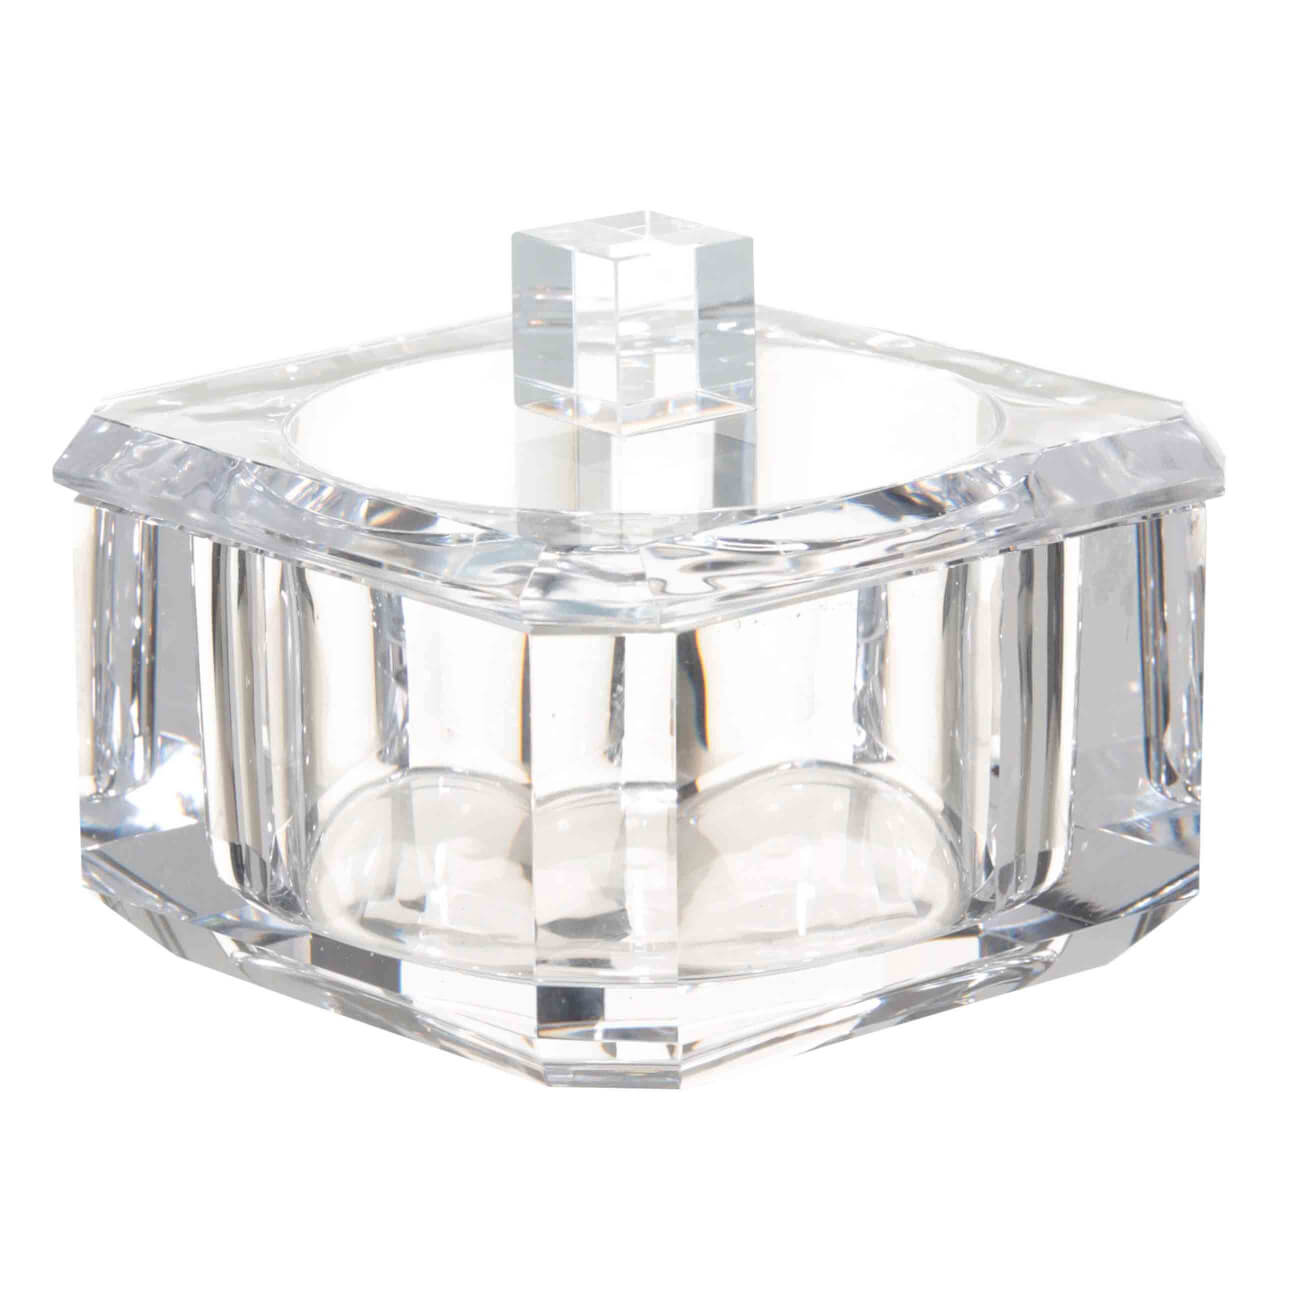 Шкатулка для ванной, 10х10 см, стекло, квадратная, Грани, Shower Crystal Glance шкатулка металл круглая